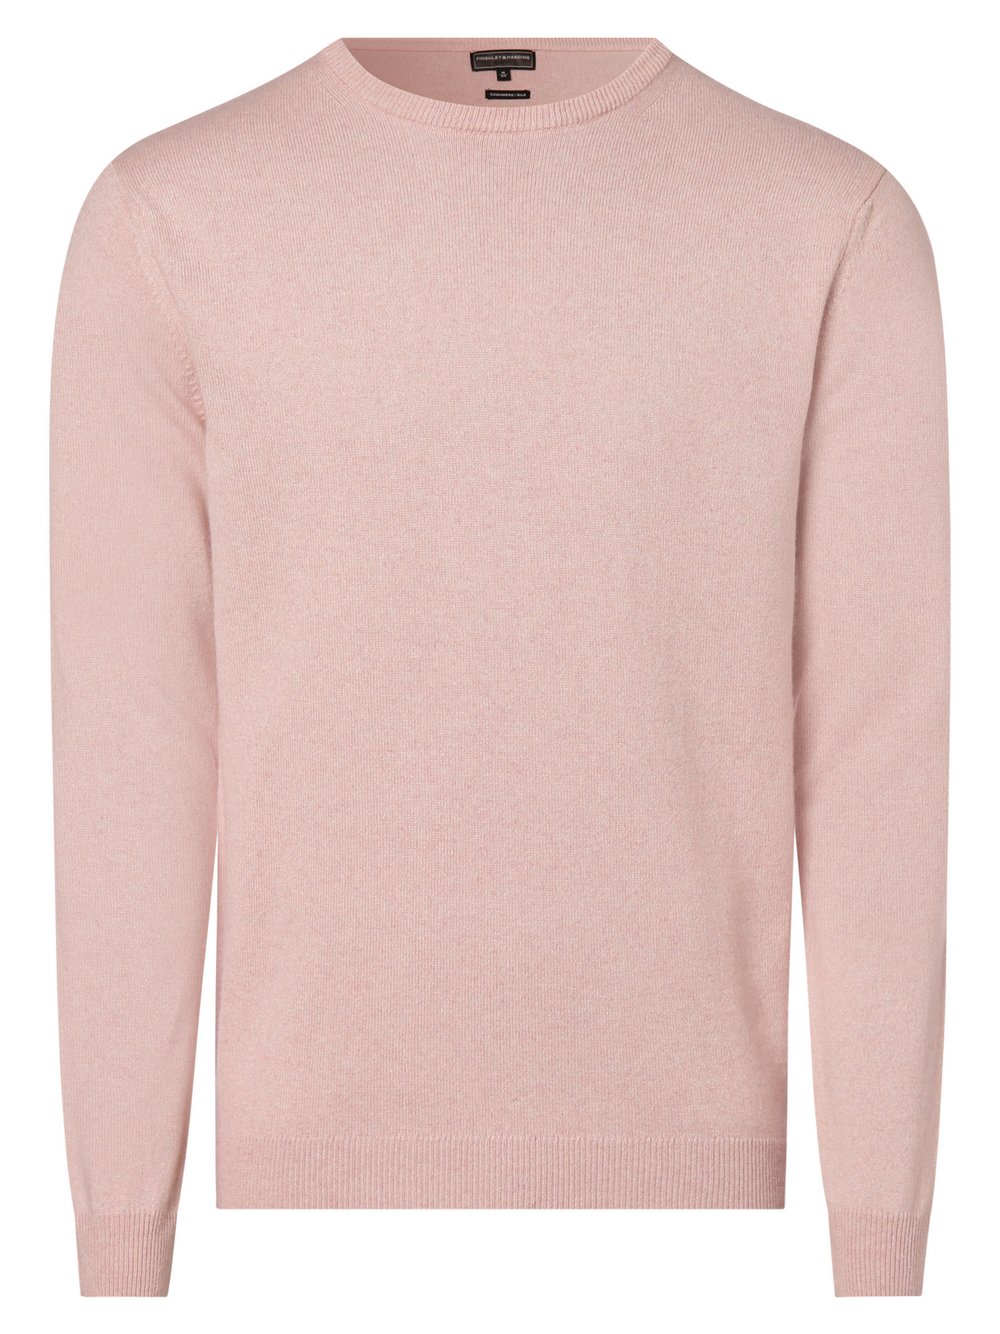 Finshley & Harding - Męski sweter z mieszanki kaszmiru i jedwabiu, różowy